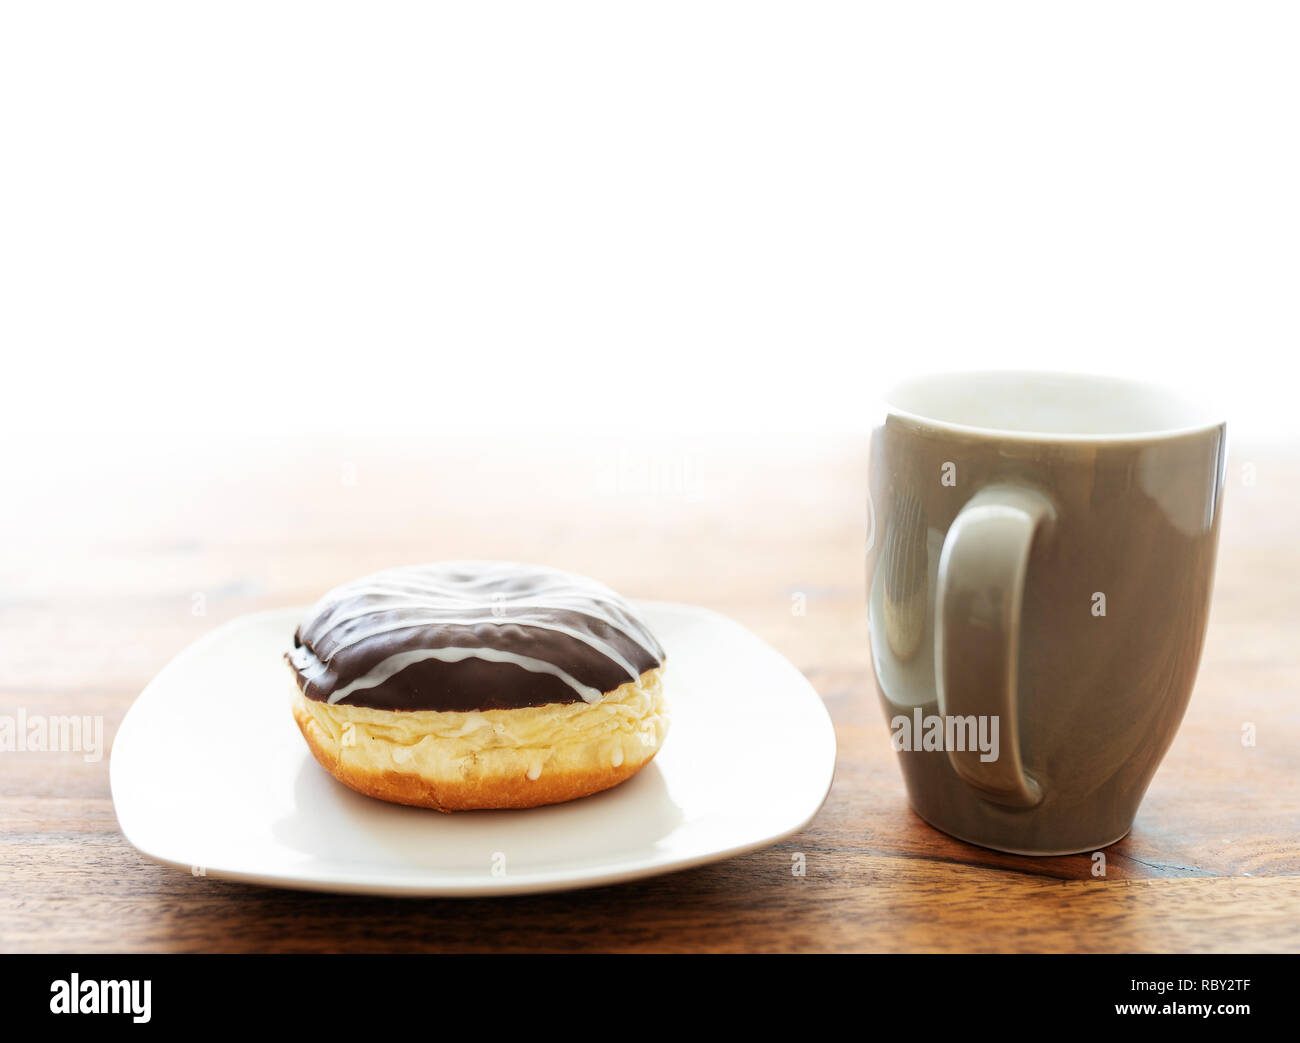 Jelly Donut und Kaffee Tasse auf hölzernen Tisch Stockfoto